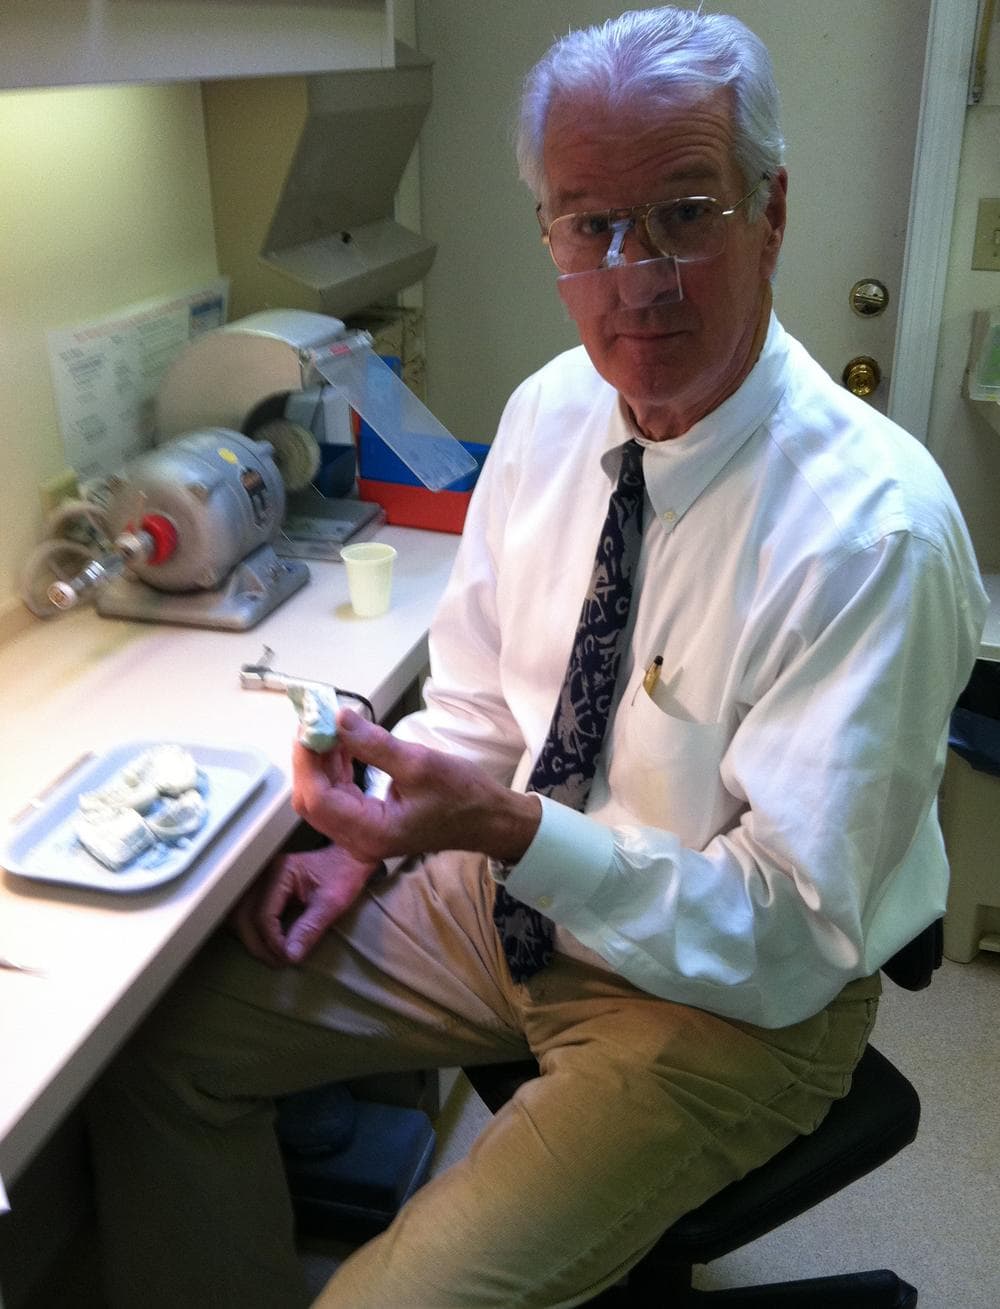 Jim Lonborg now works as a dentist in Massachusetts. (David Boeri/WBUR)